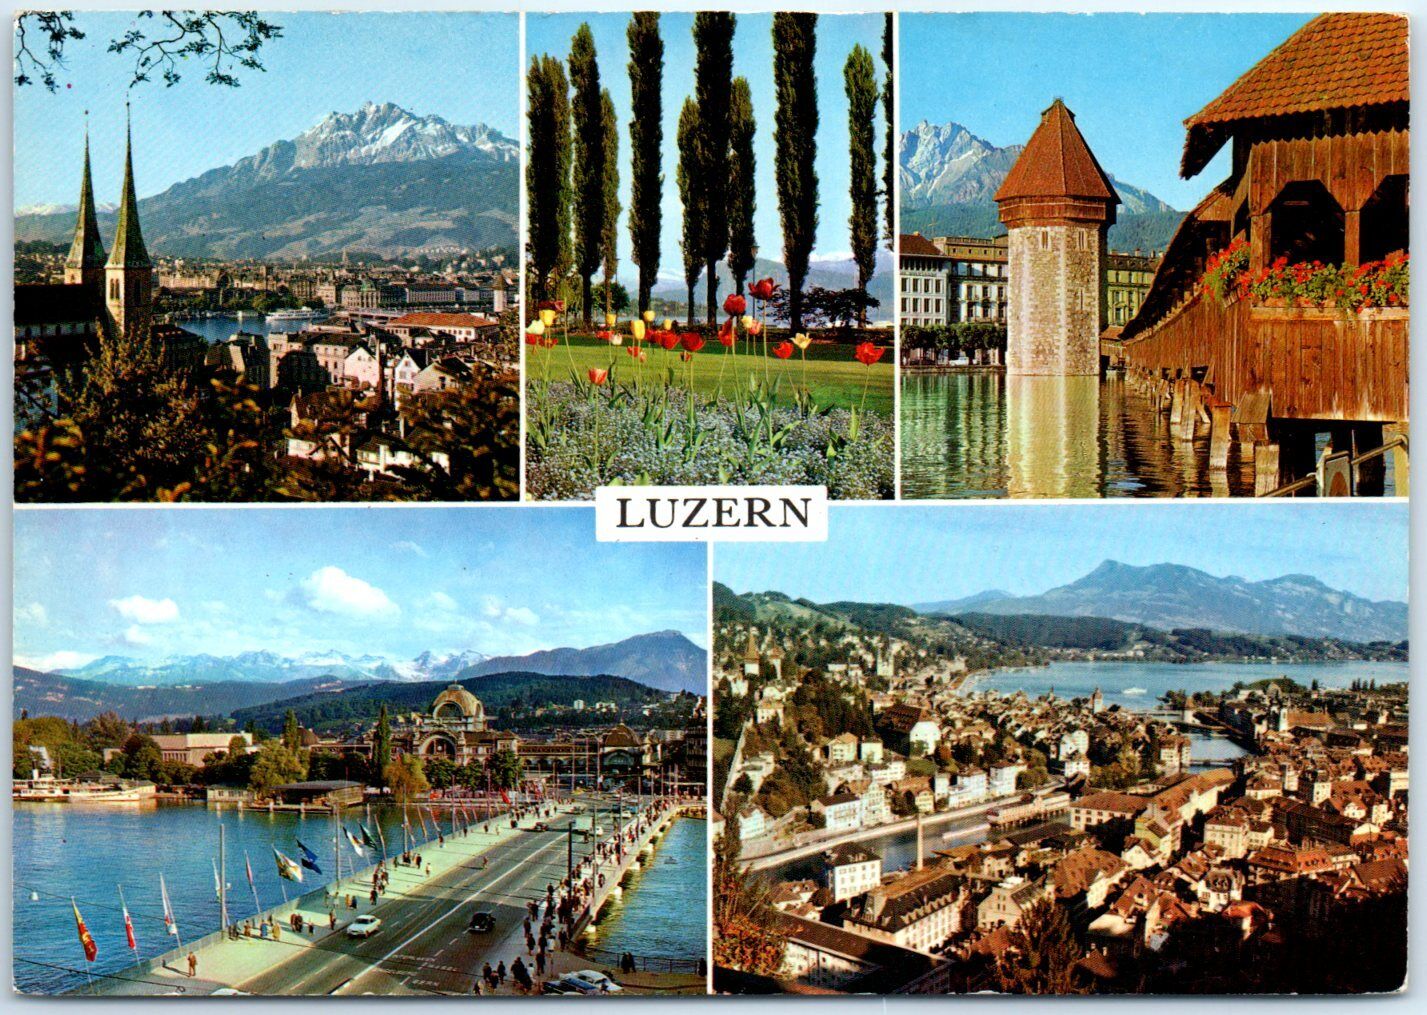 Postcard - Lucerne, Switzerland